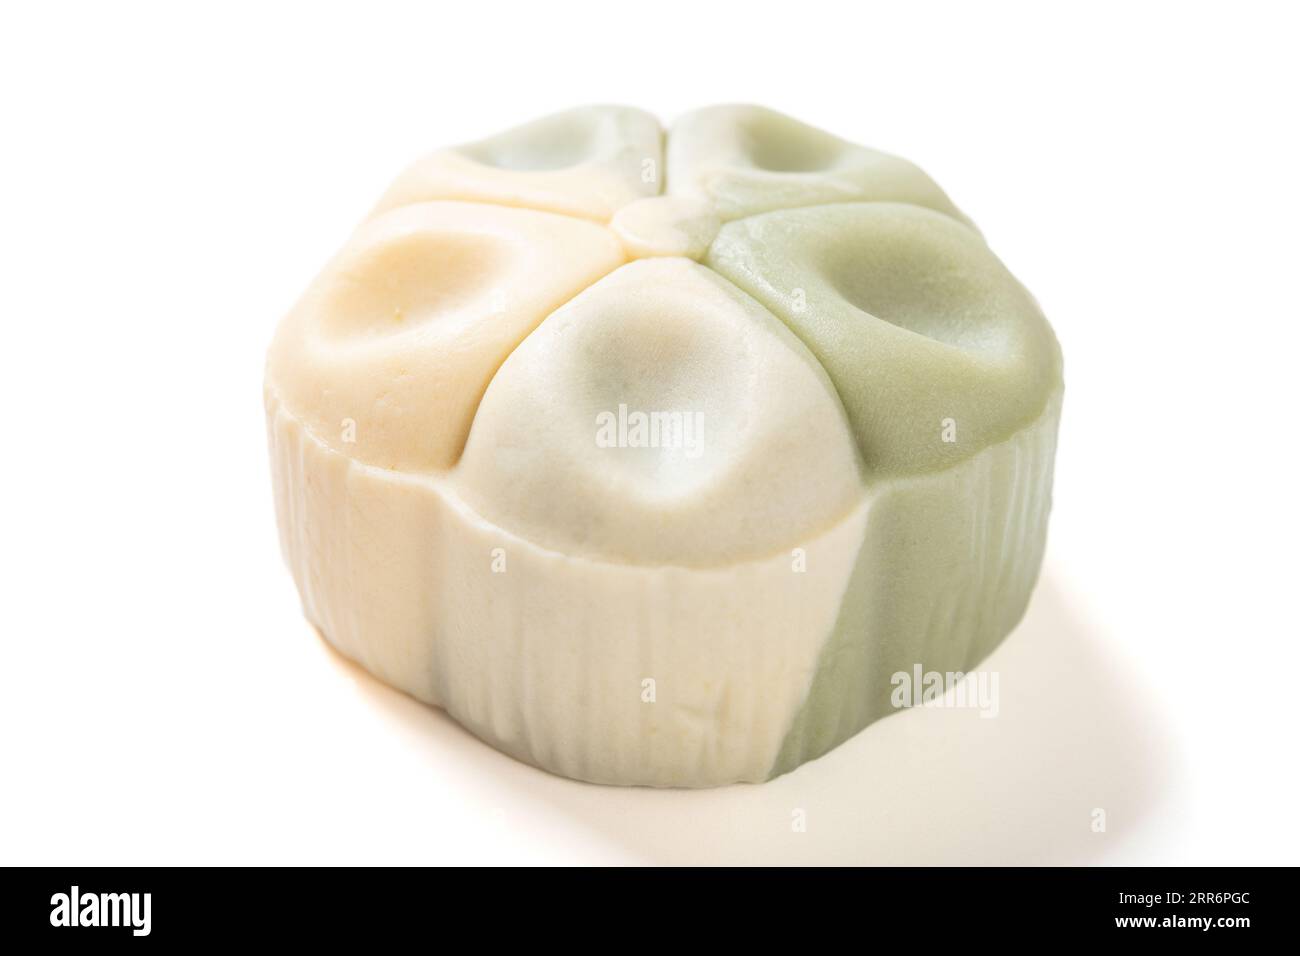 vista angolare elegante e bellissima torta luna dai colori verde e bianco a forma di fiore su sfondo bianco Foto Stock